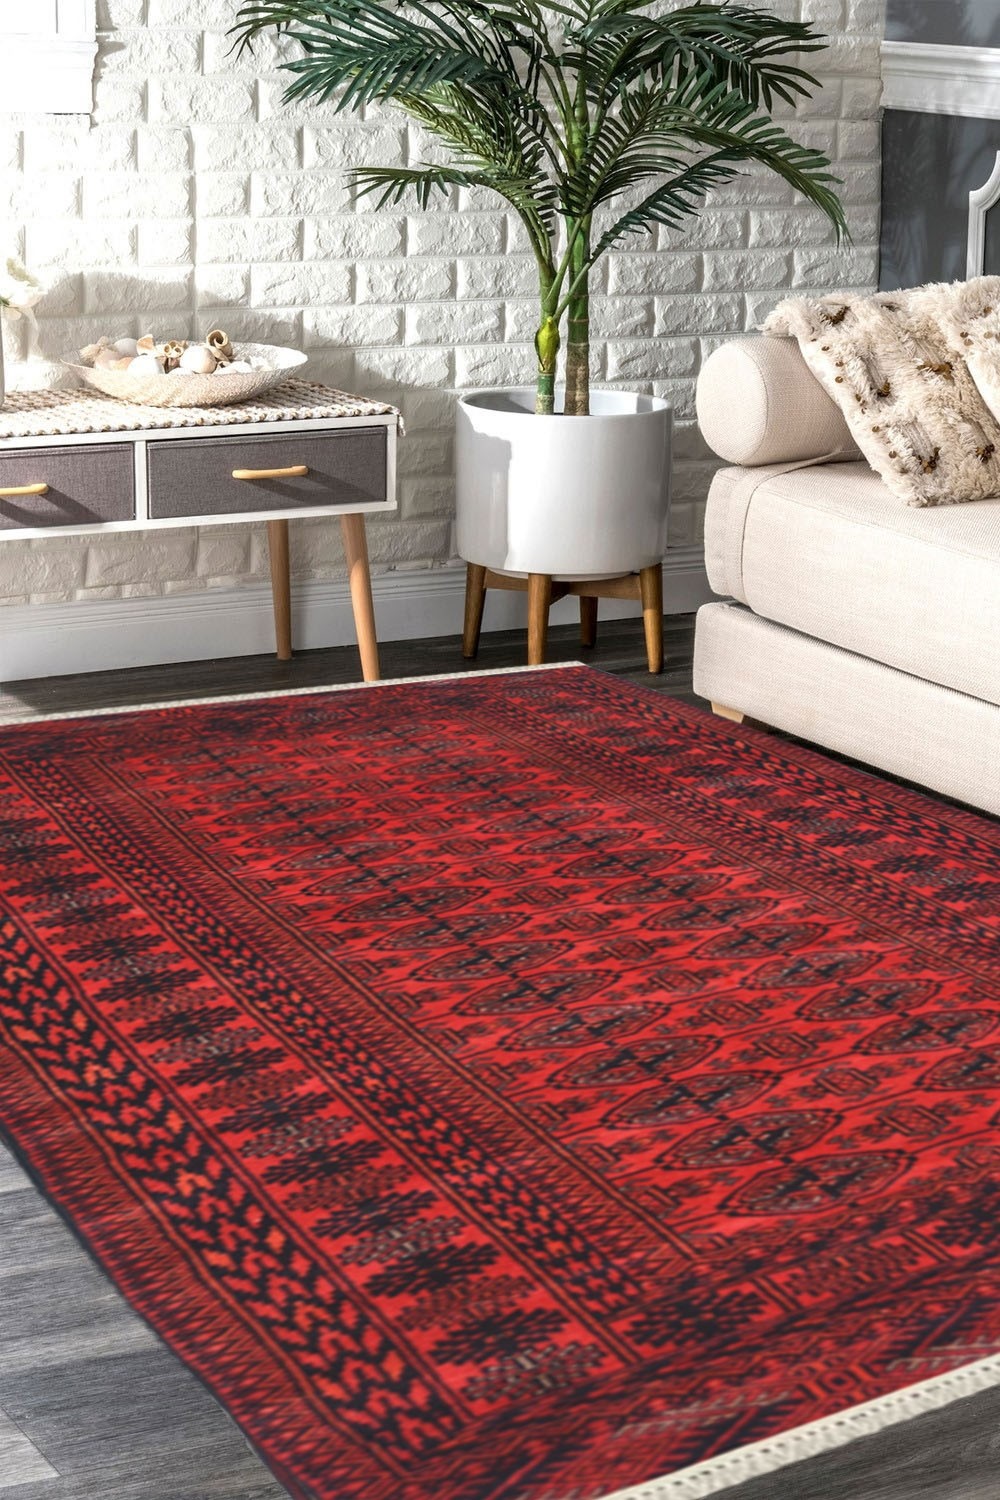 Aesthetically pleasing Afghan rugs